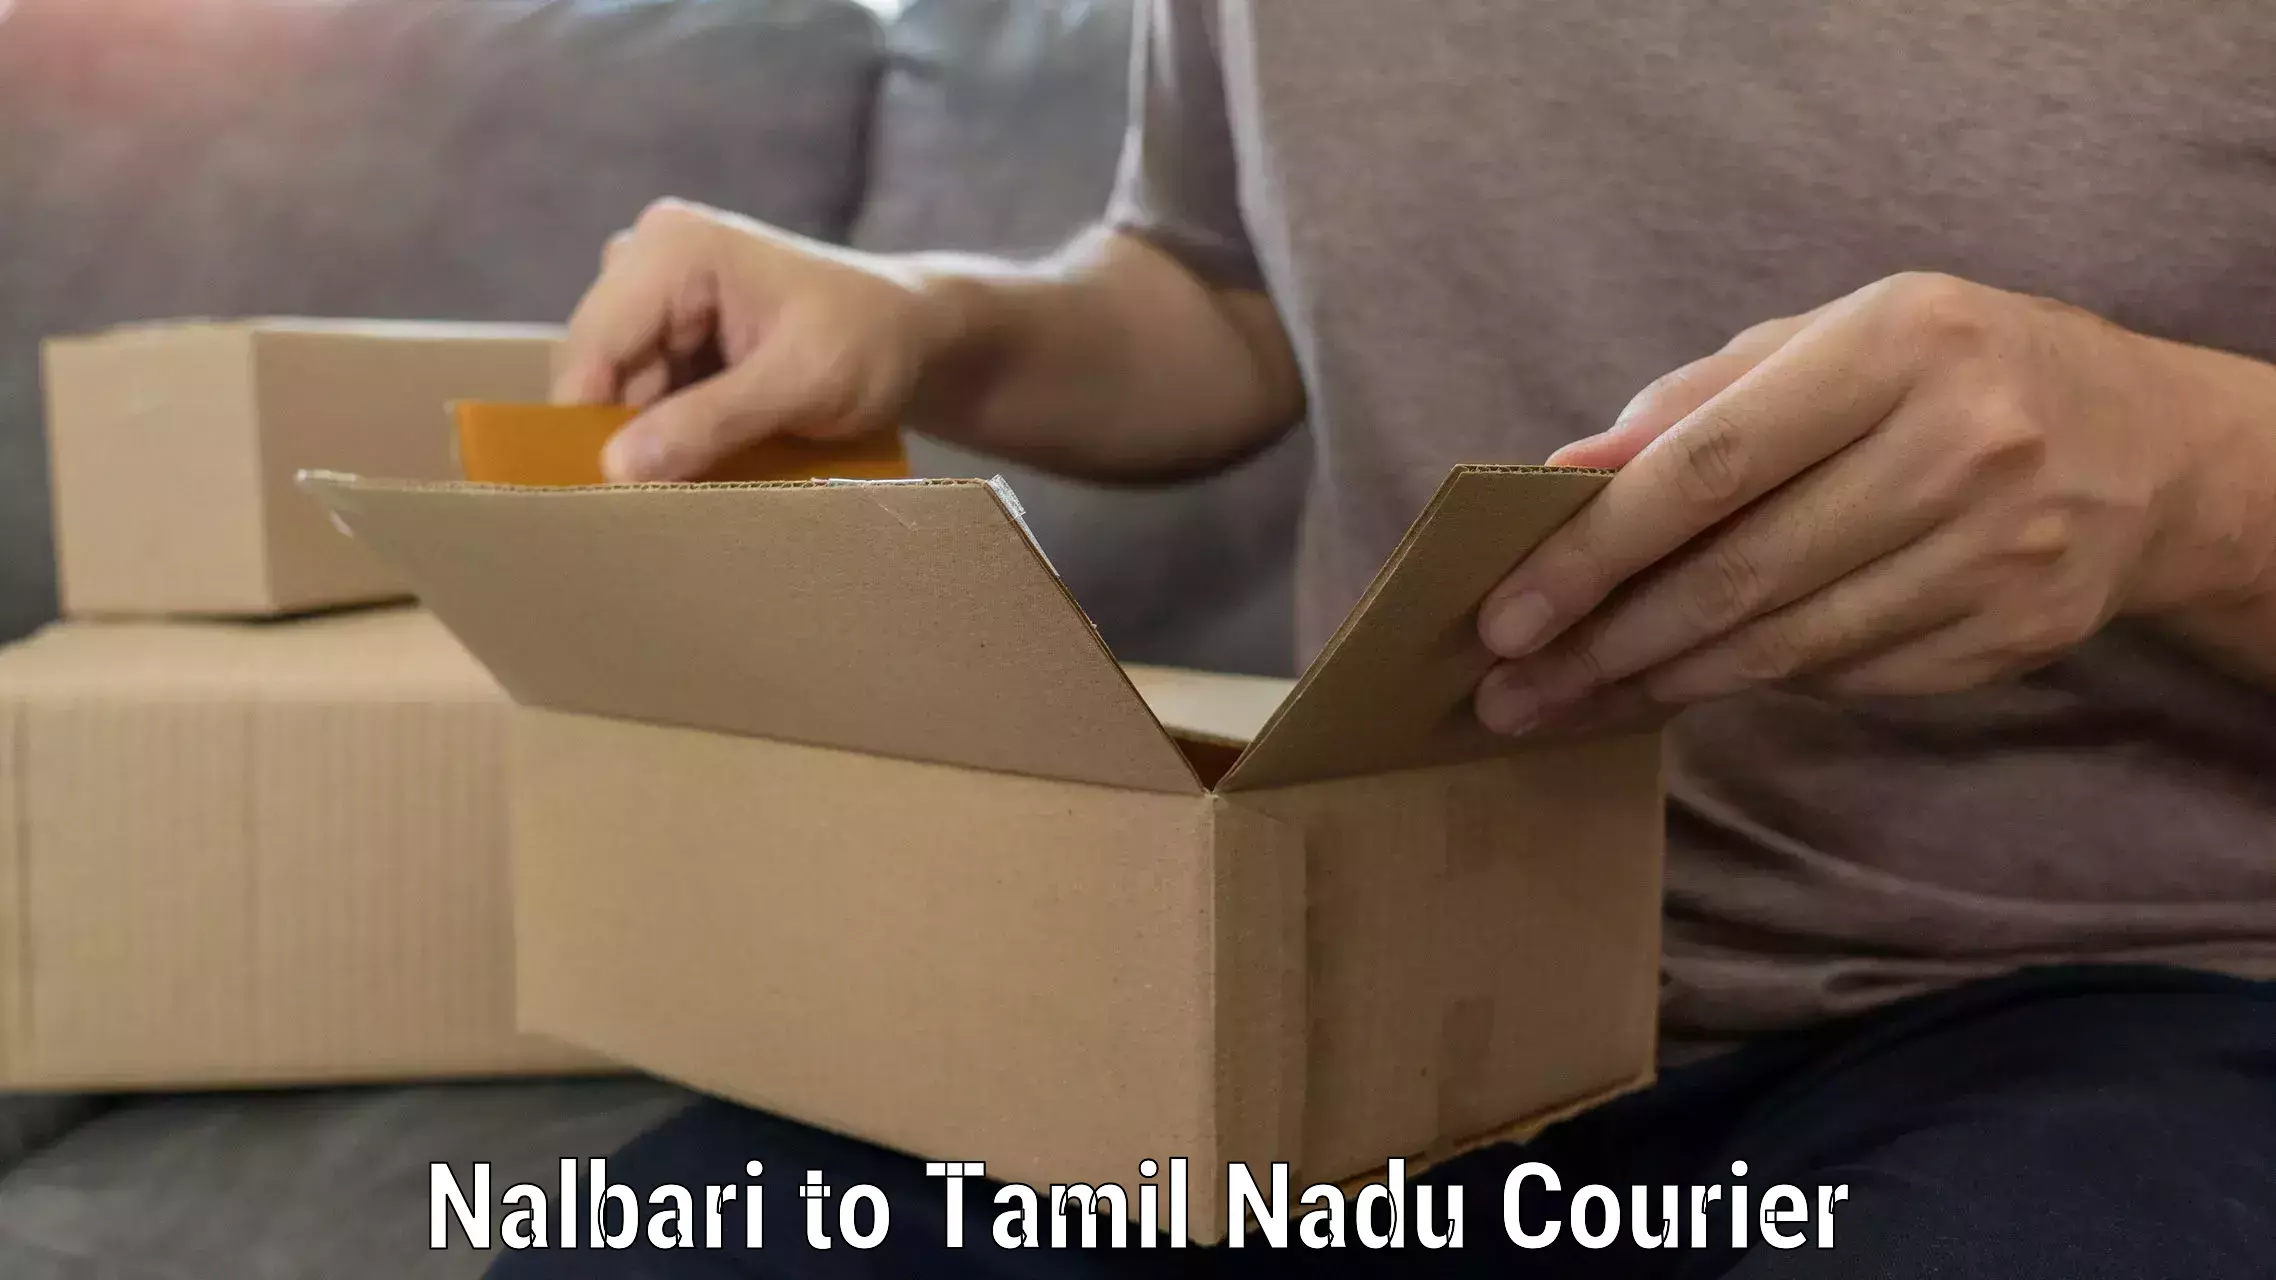 Expert furniture movers Nalbari to Pudukkottai